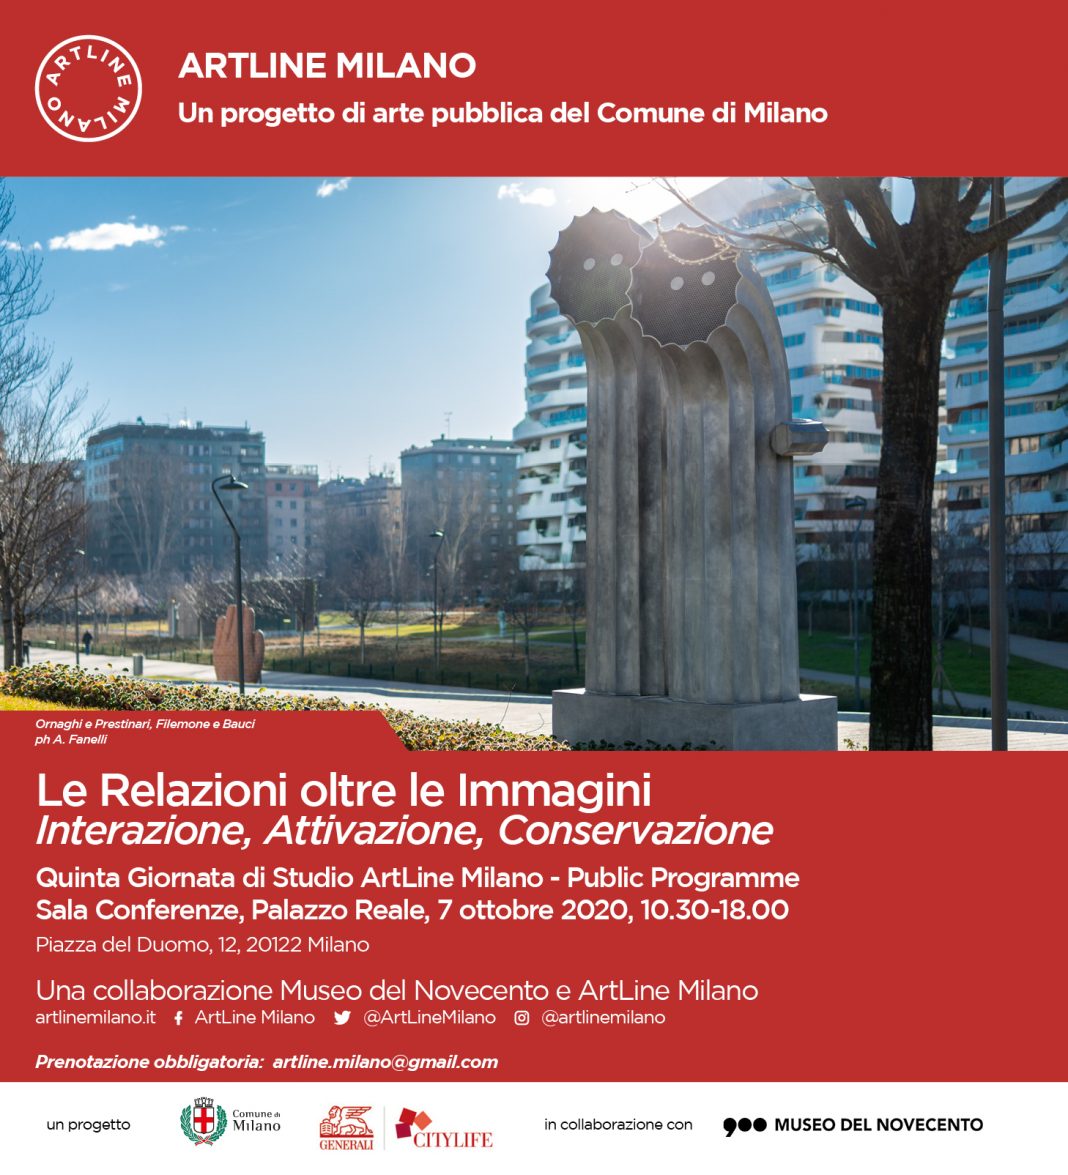 Le Relazioni oltre le Immagini. Quinta Giornata di Studio ArtLine Milanohttps://www.exibart.com/repository/media/formidable/11/invito-20_03_2020-1-1068x1175.jpg